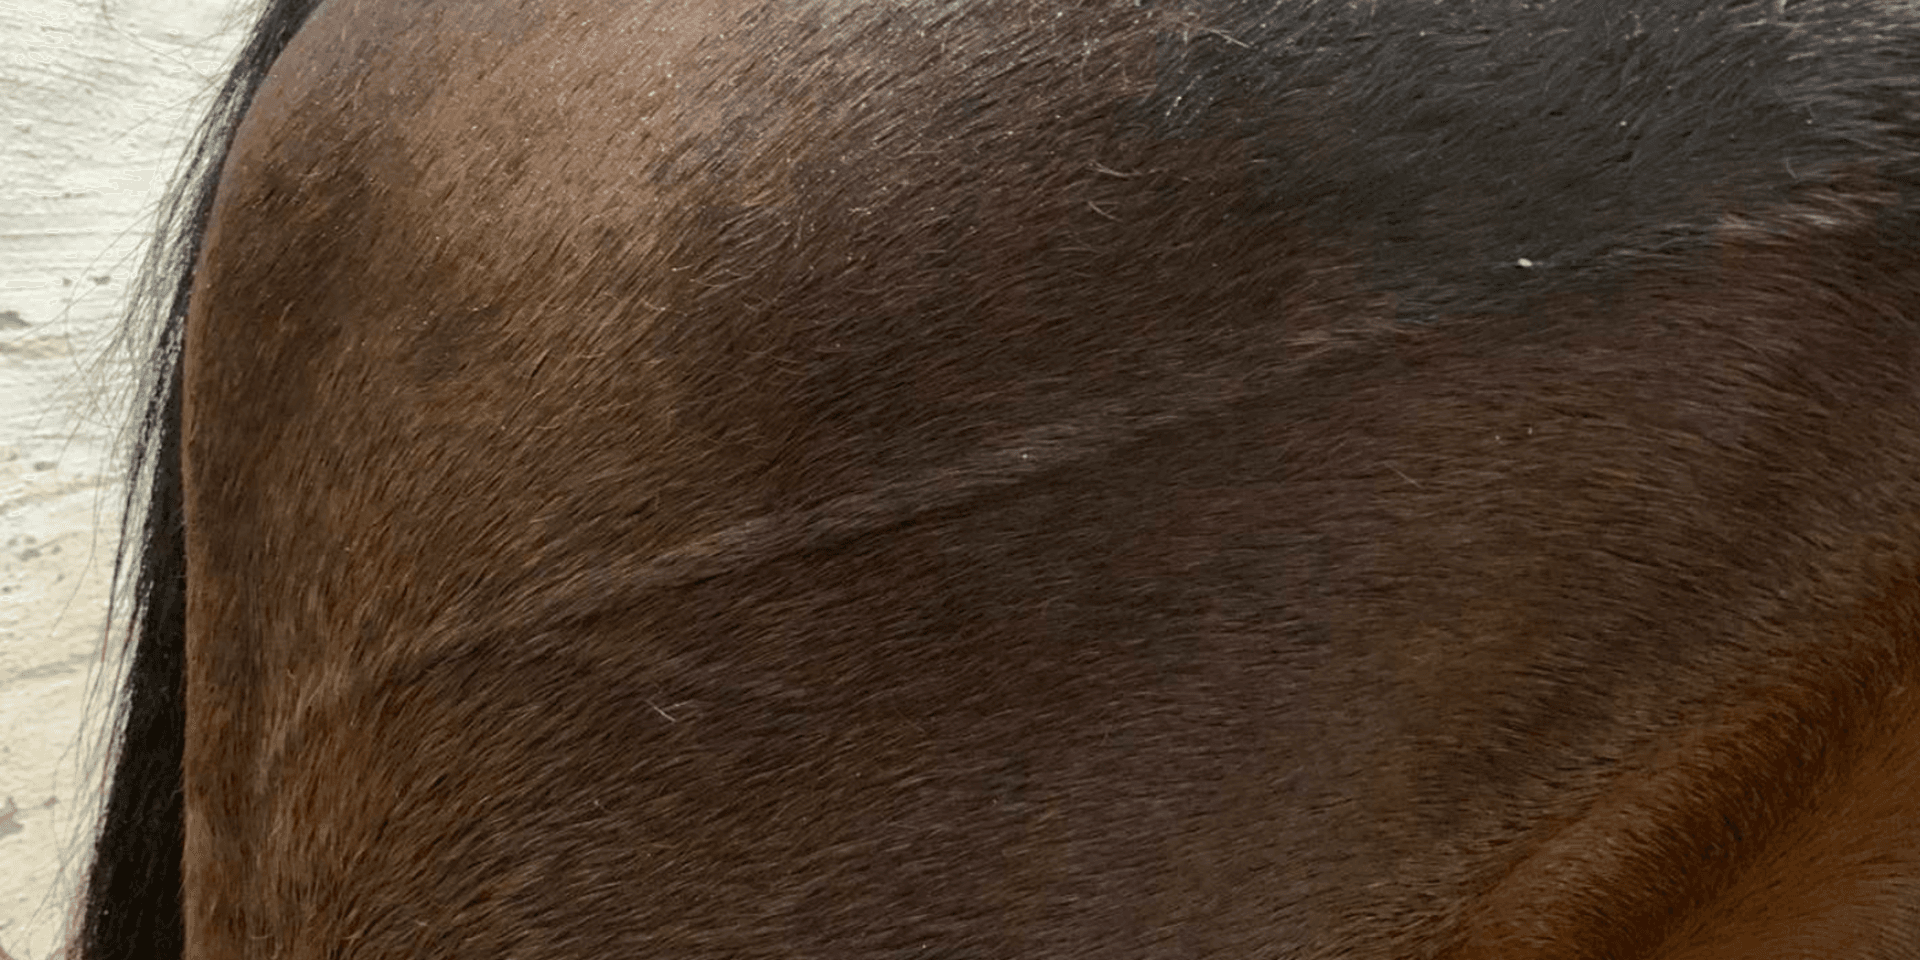 Del av åklagarens bevismaterial som visar att hästen haft en svullnad på huden någon timme efter att loppet kördes på Jägersro i november 2020.